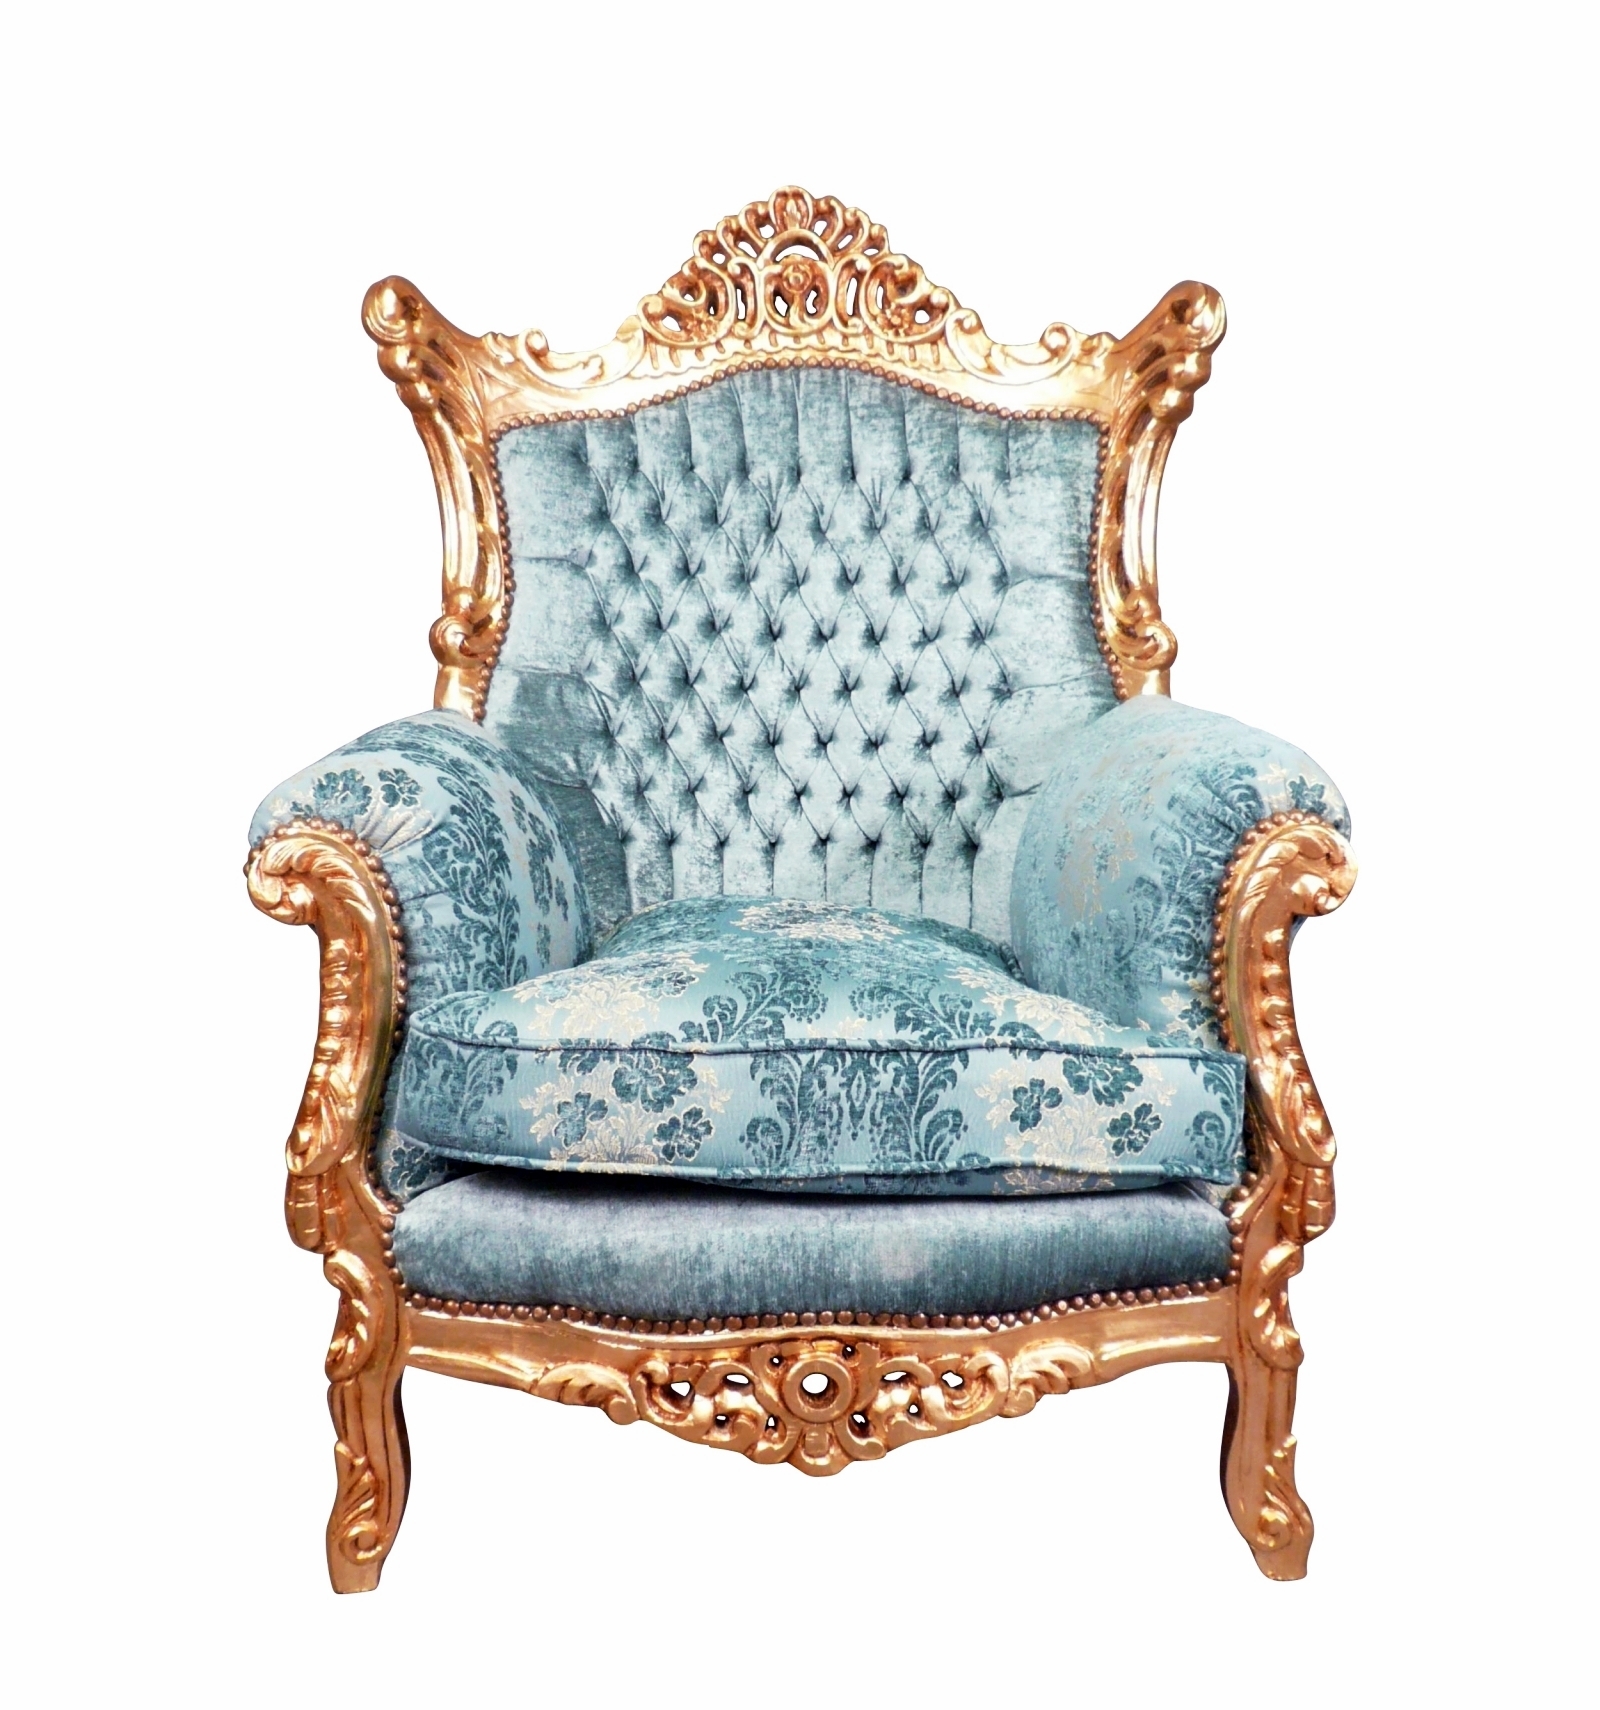 Dubbelzinnig Vol Doorzichtig Barok fauteuil Eindhoven - Koninklijke barok stoel - stoel barok